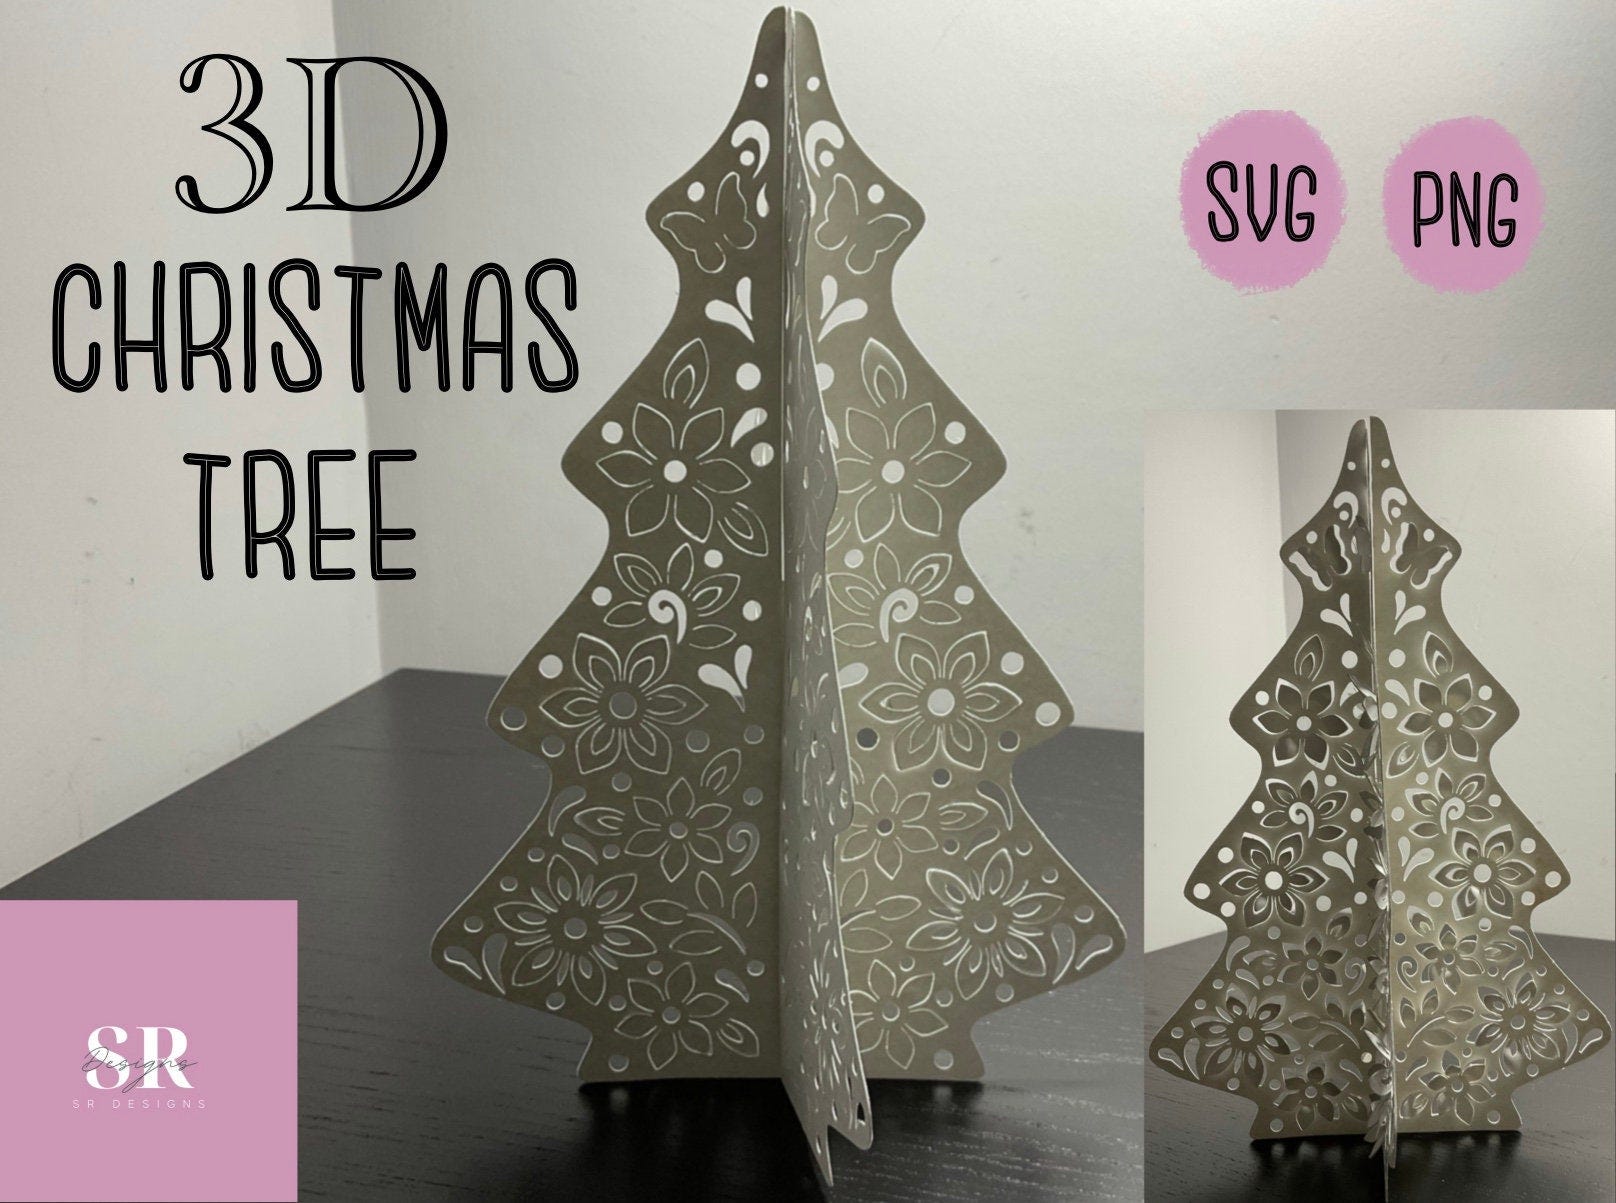 SVG: 3D Christmas tree. Christmas tree svg. Digital download. Paper cutting. Floral pop ups. Pop up SVG. 3D SVG. Christmas svg.